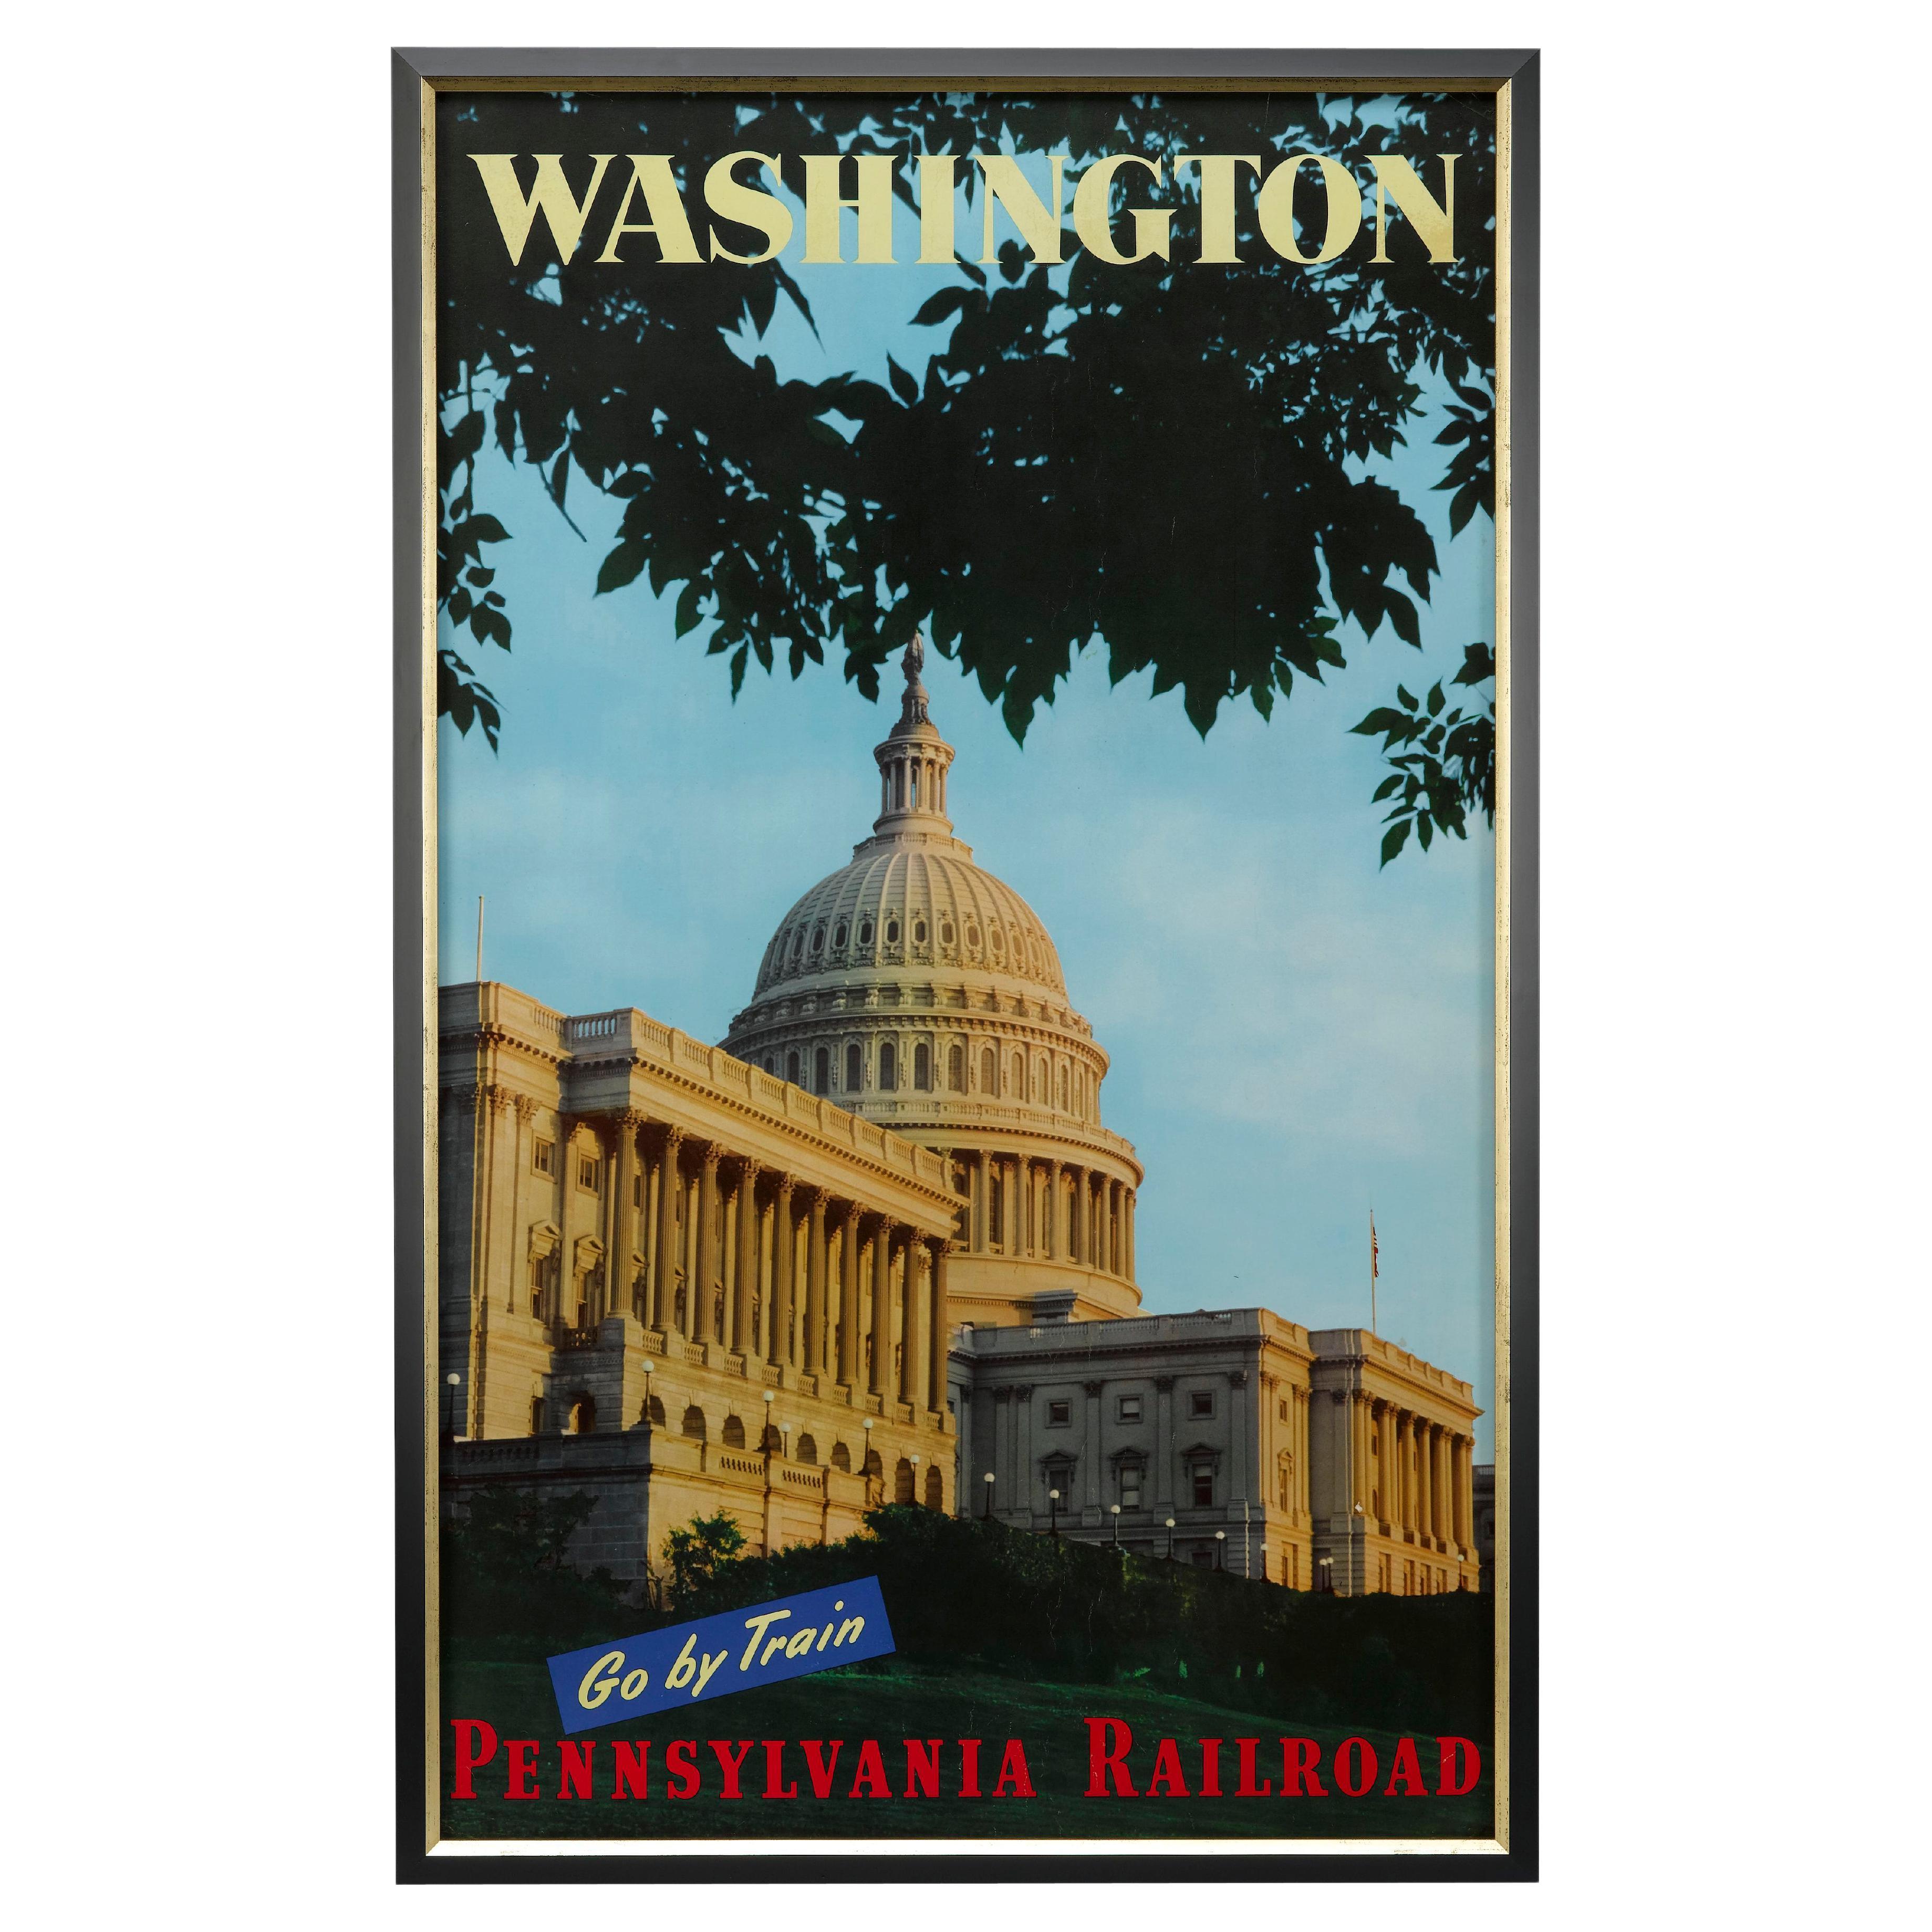 Affiche de voyage vintage « Washington/Go By Train/ Pennsylvania Railroad » (Washington/Go par train)